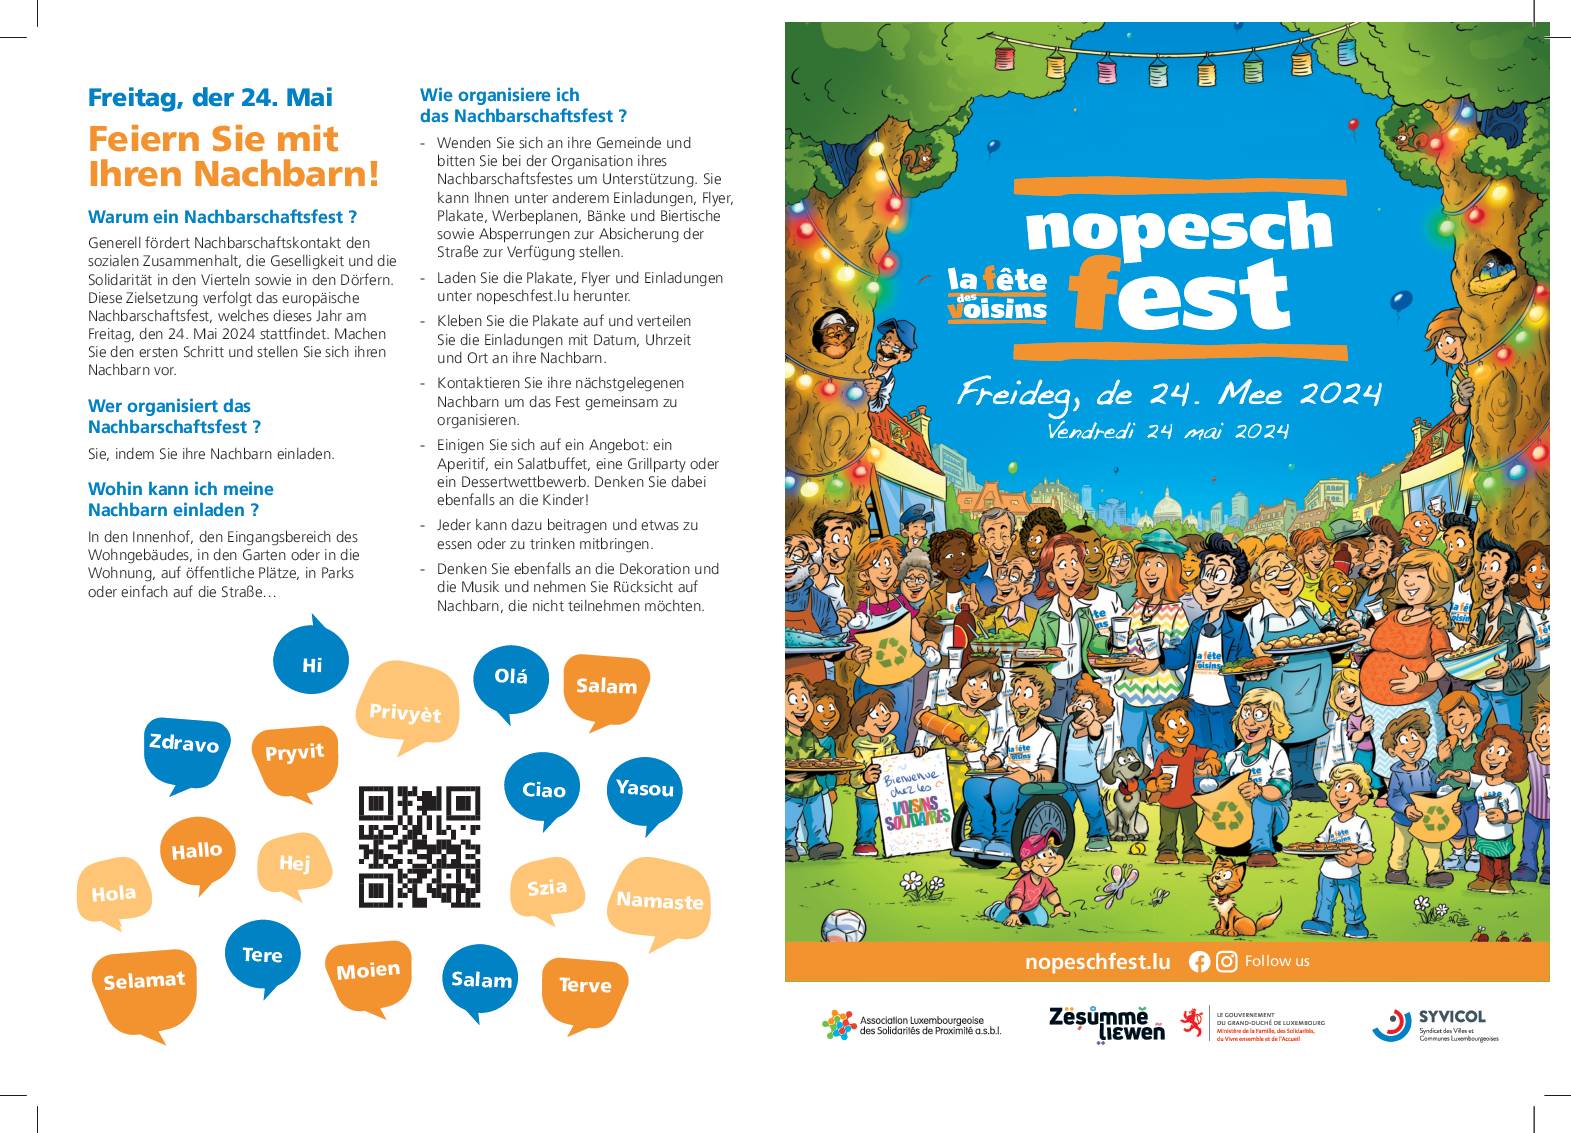 Nopeschfest vum 24. Mee 2024 / Fête des voisins du 24 mai 2024